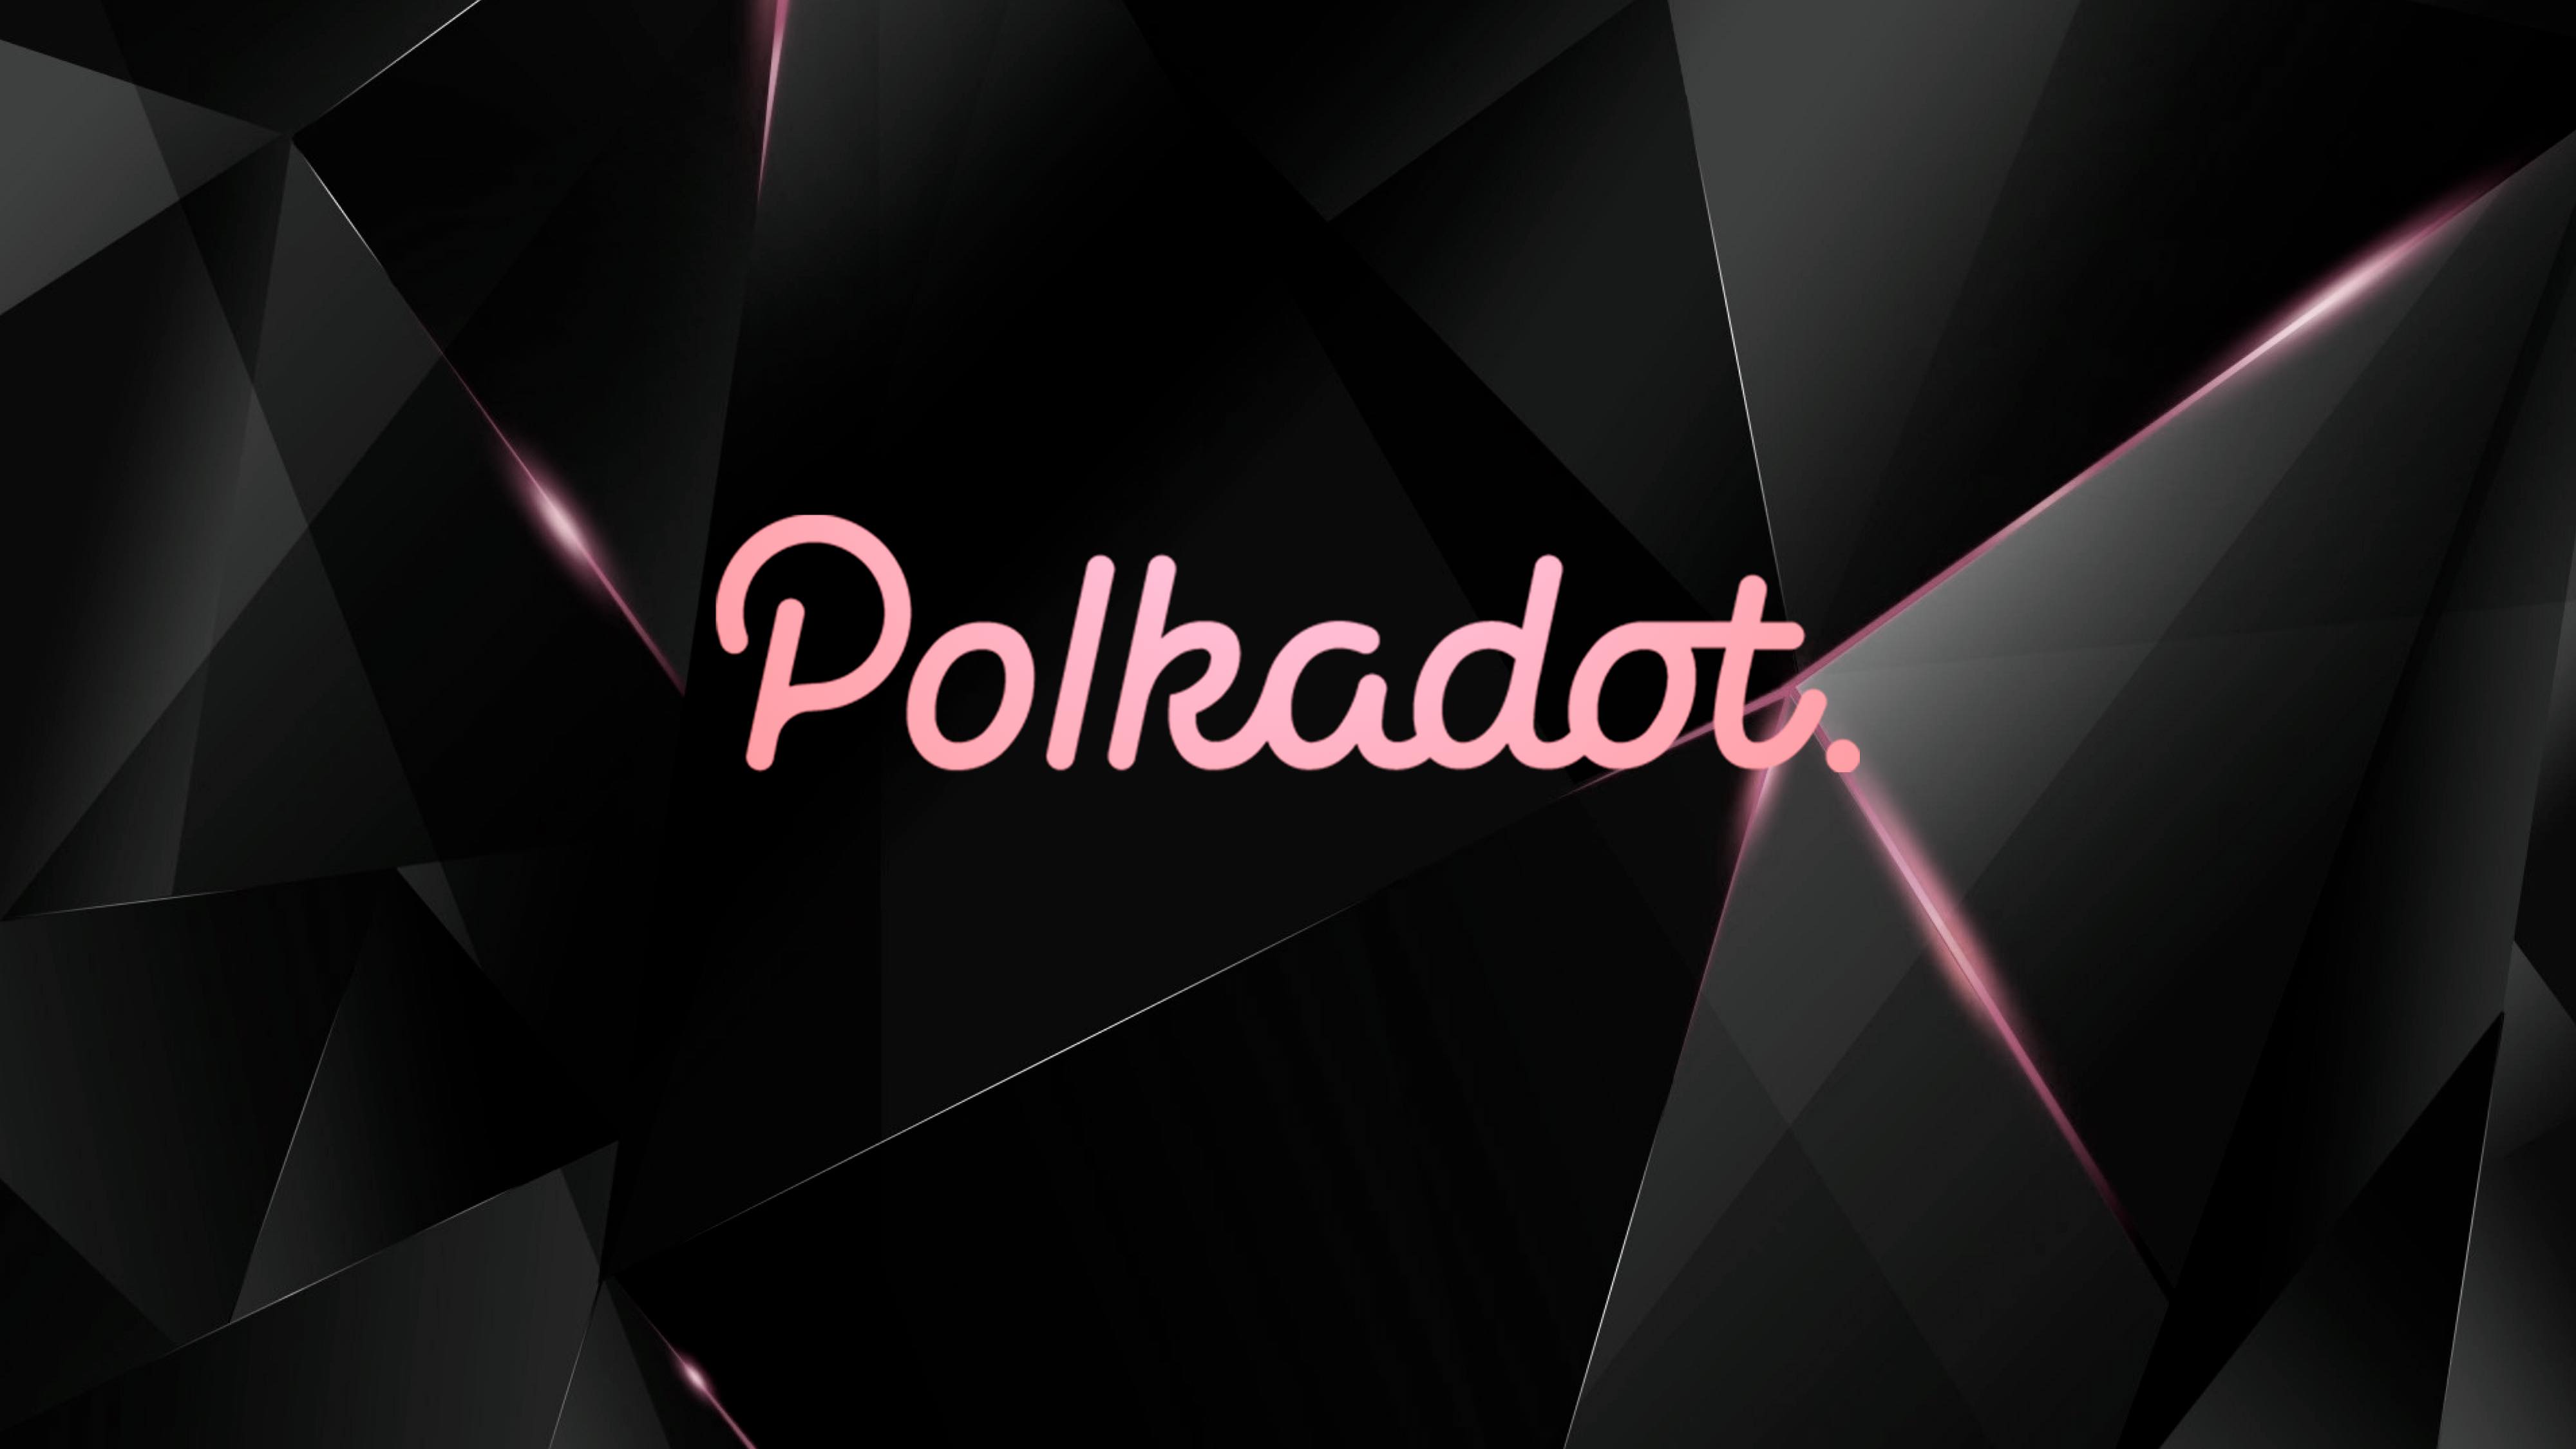 详解 Polkadot 技术、治理、应用与平行链进展